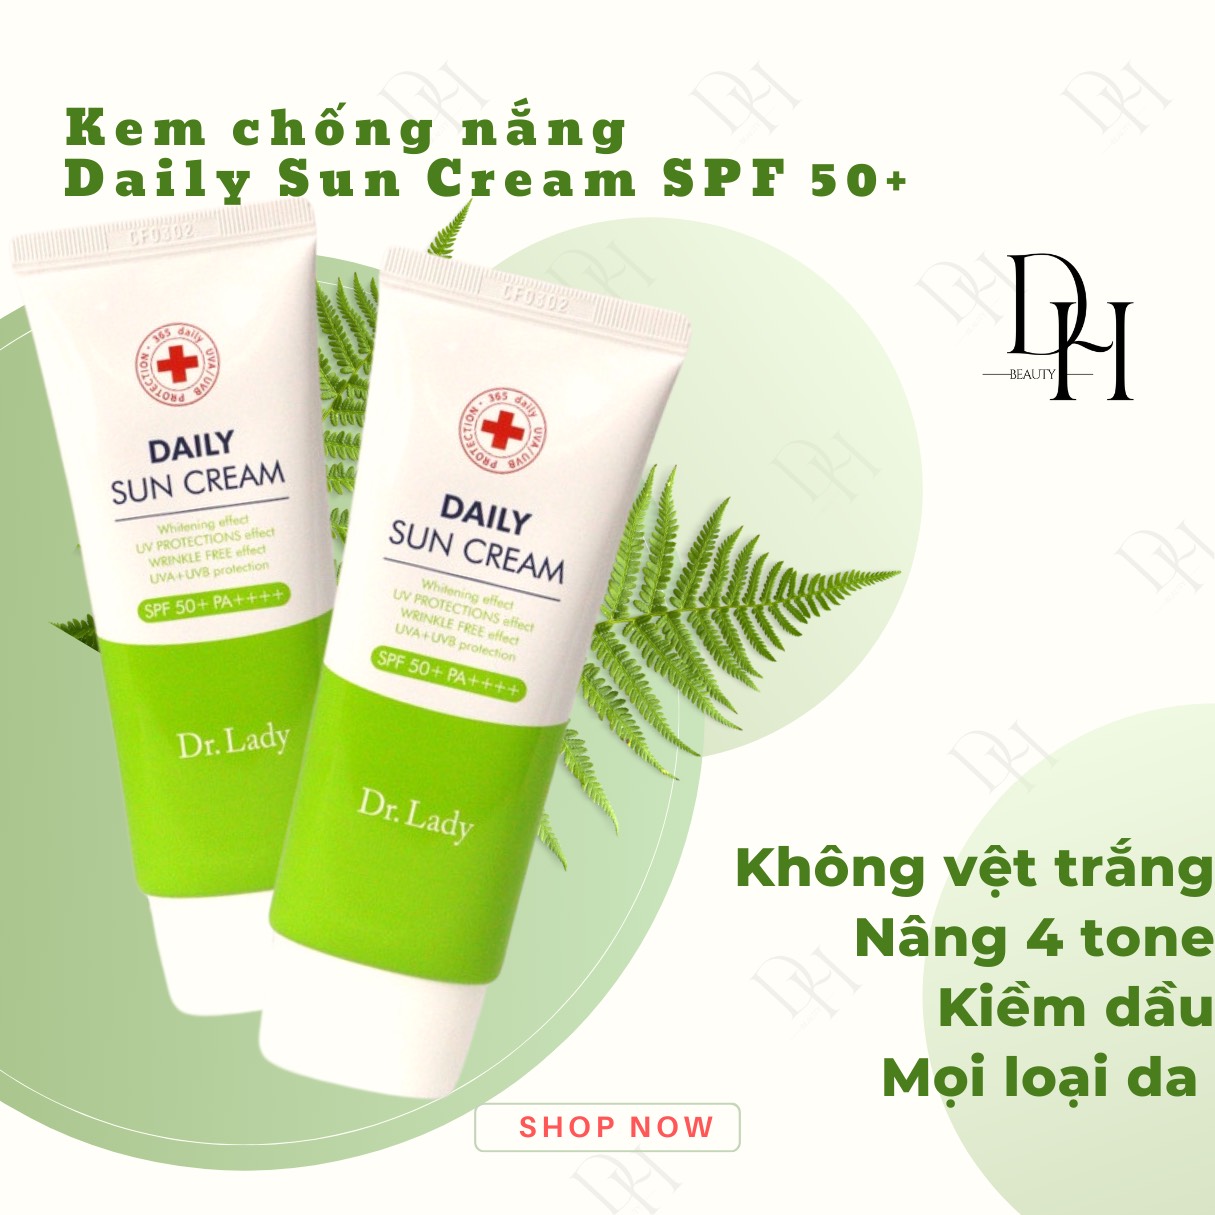 Kem chống nắng Daily Sun Cream nâng tone, kiềm dầu, dưỡng trắng Dr Lady/ SPF 50+, PA++++/ da nhạy cảm, dầu mun/Hàn Quốc/60ml/ Date 2026